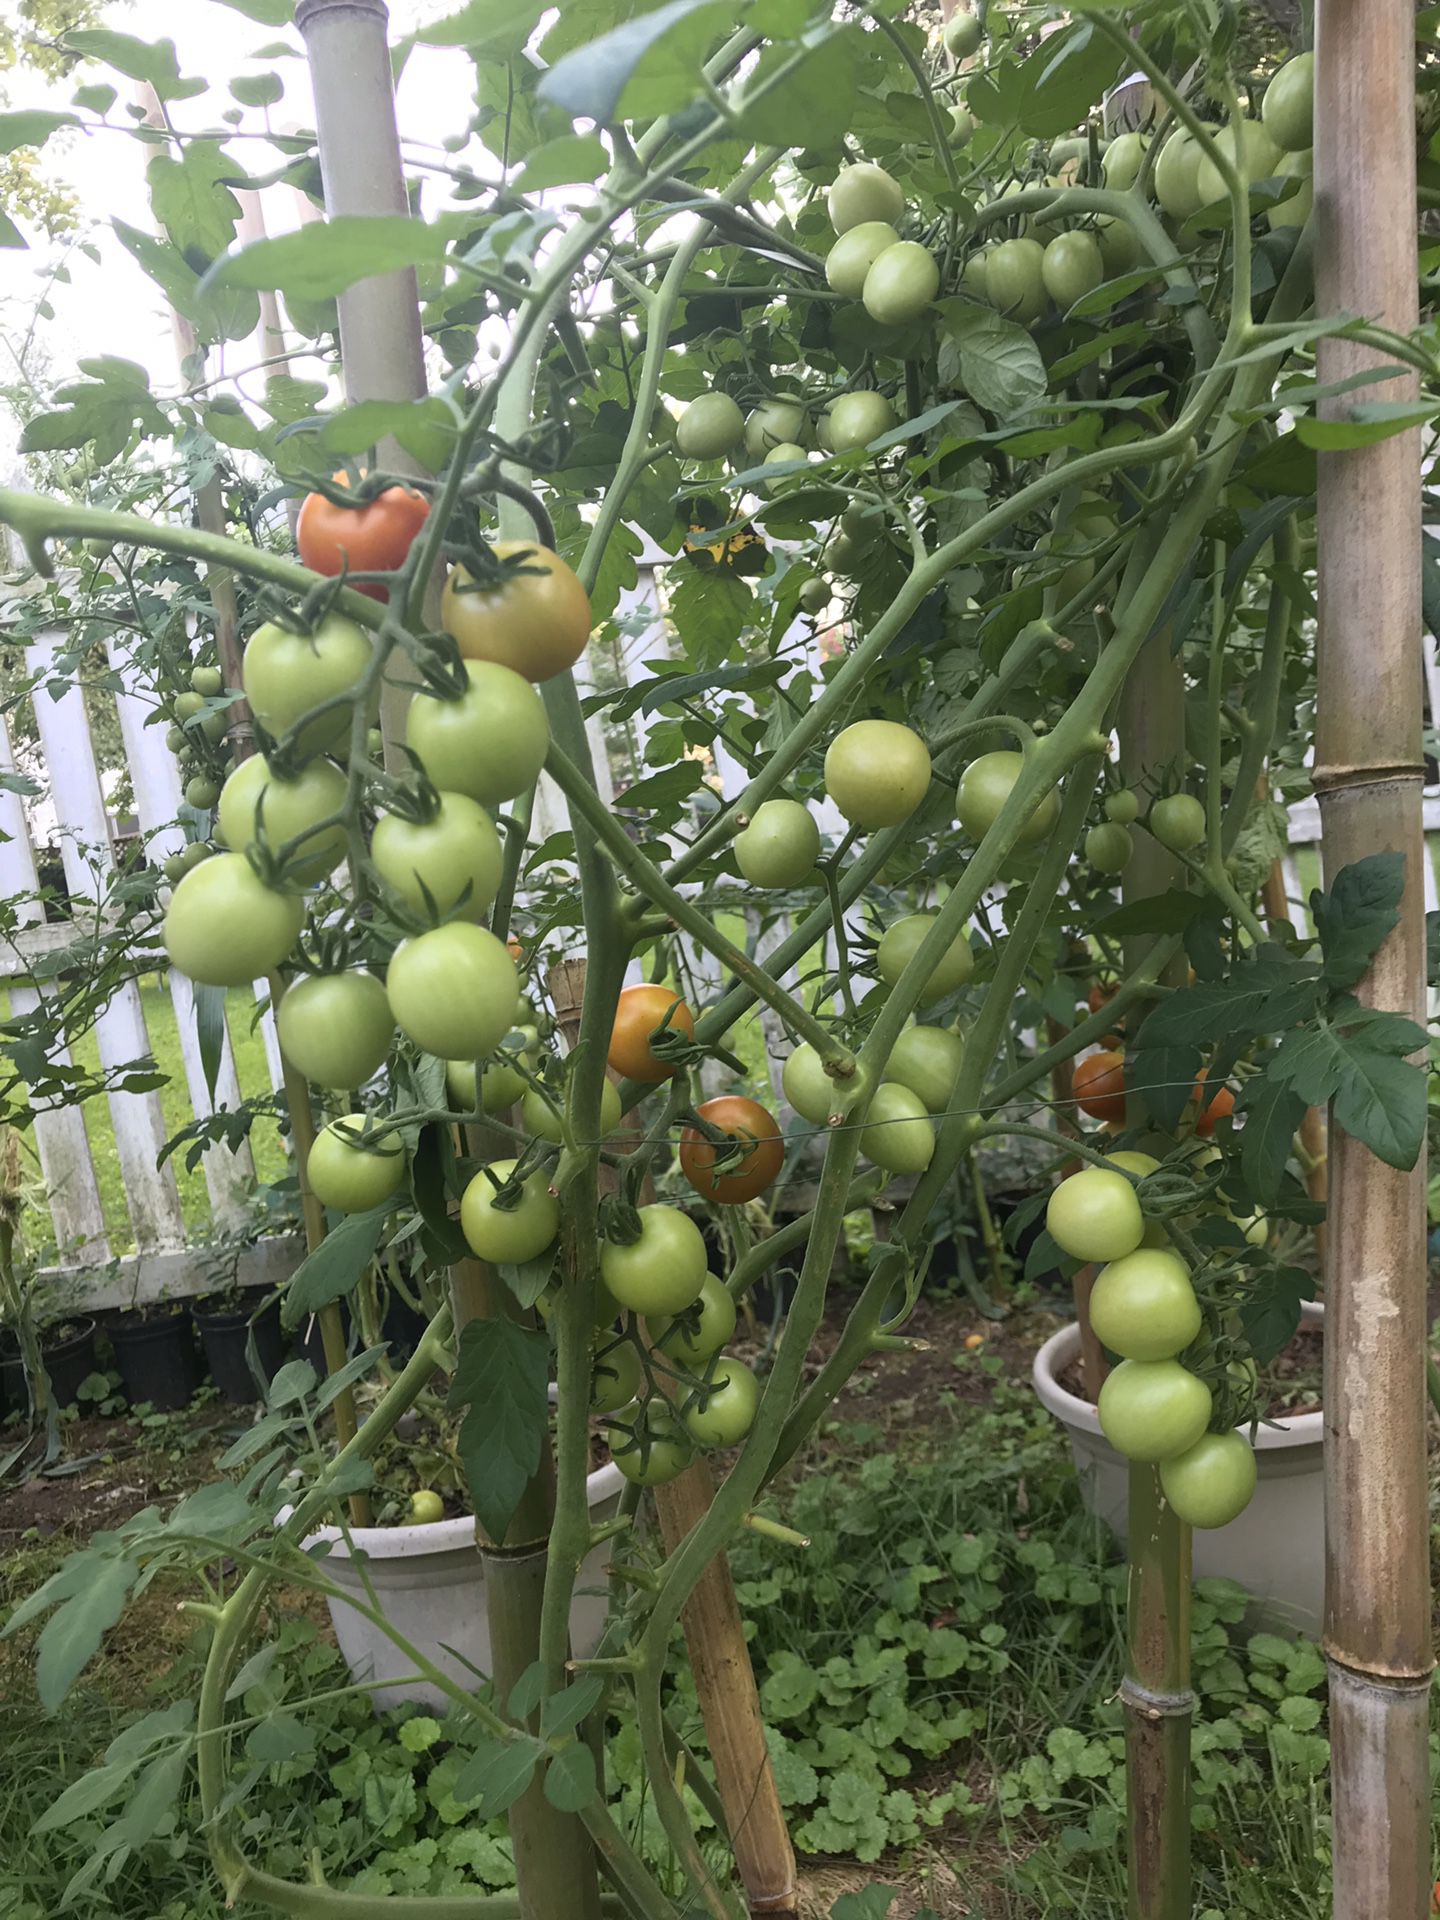 Tomato plants